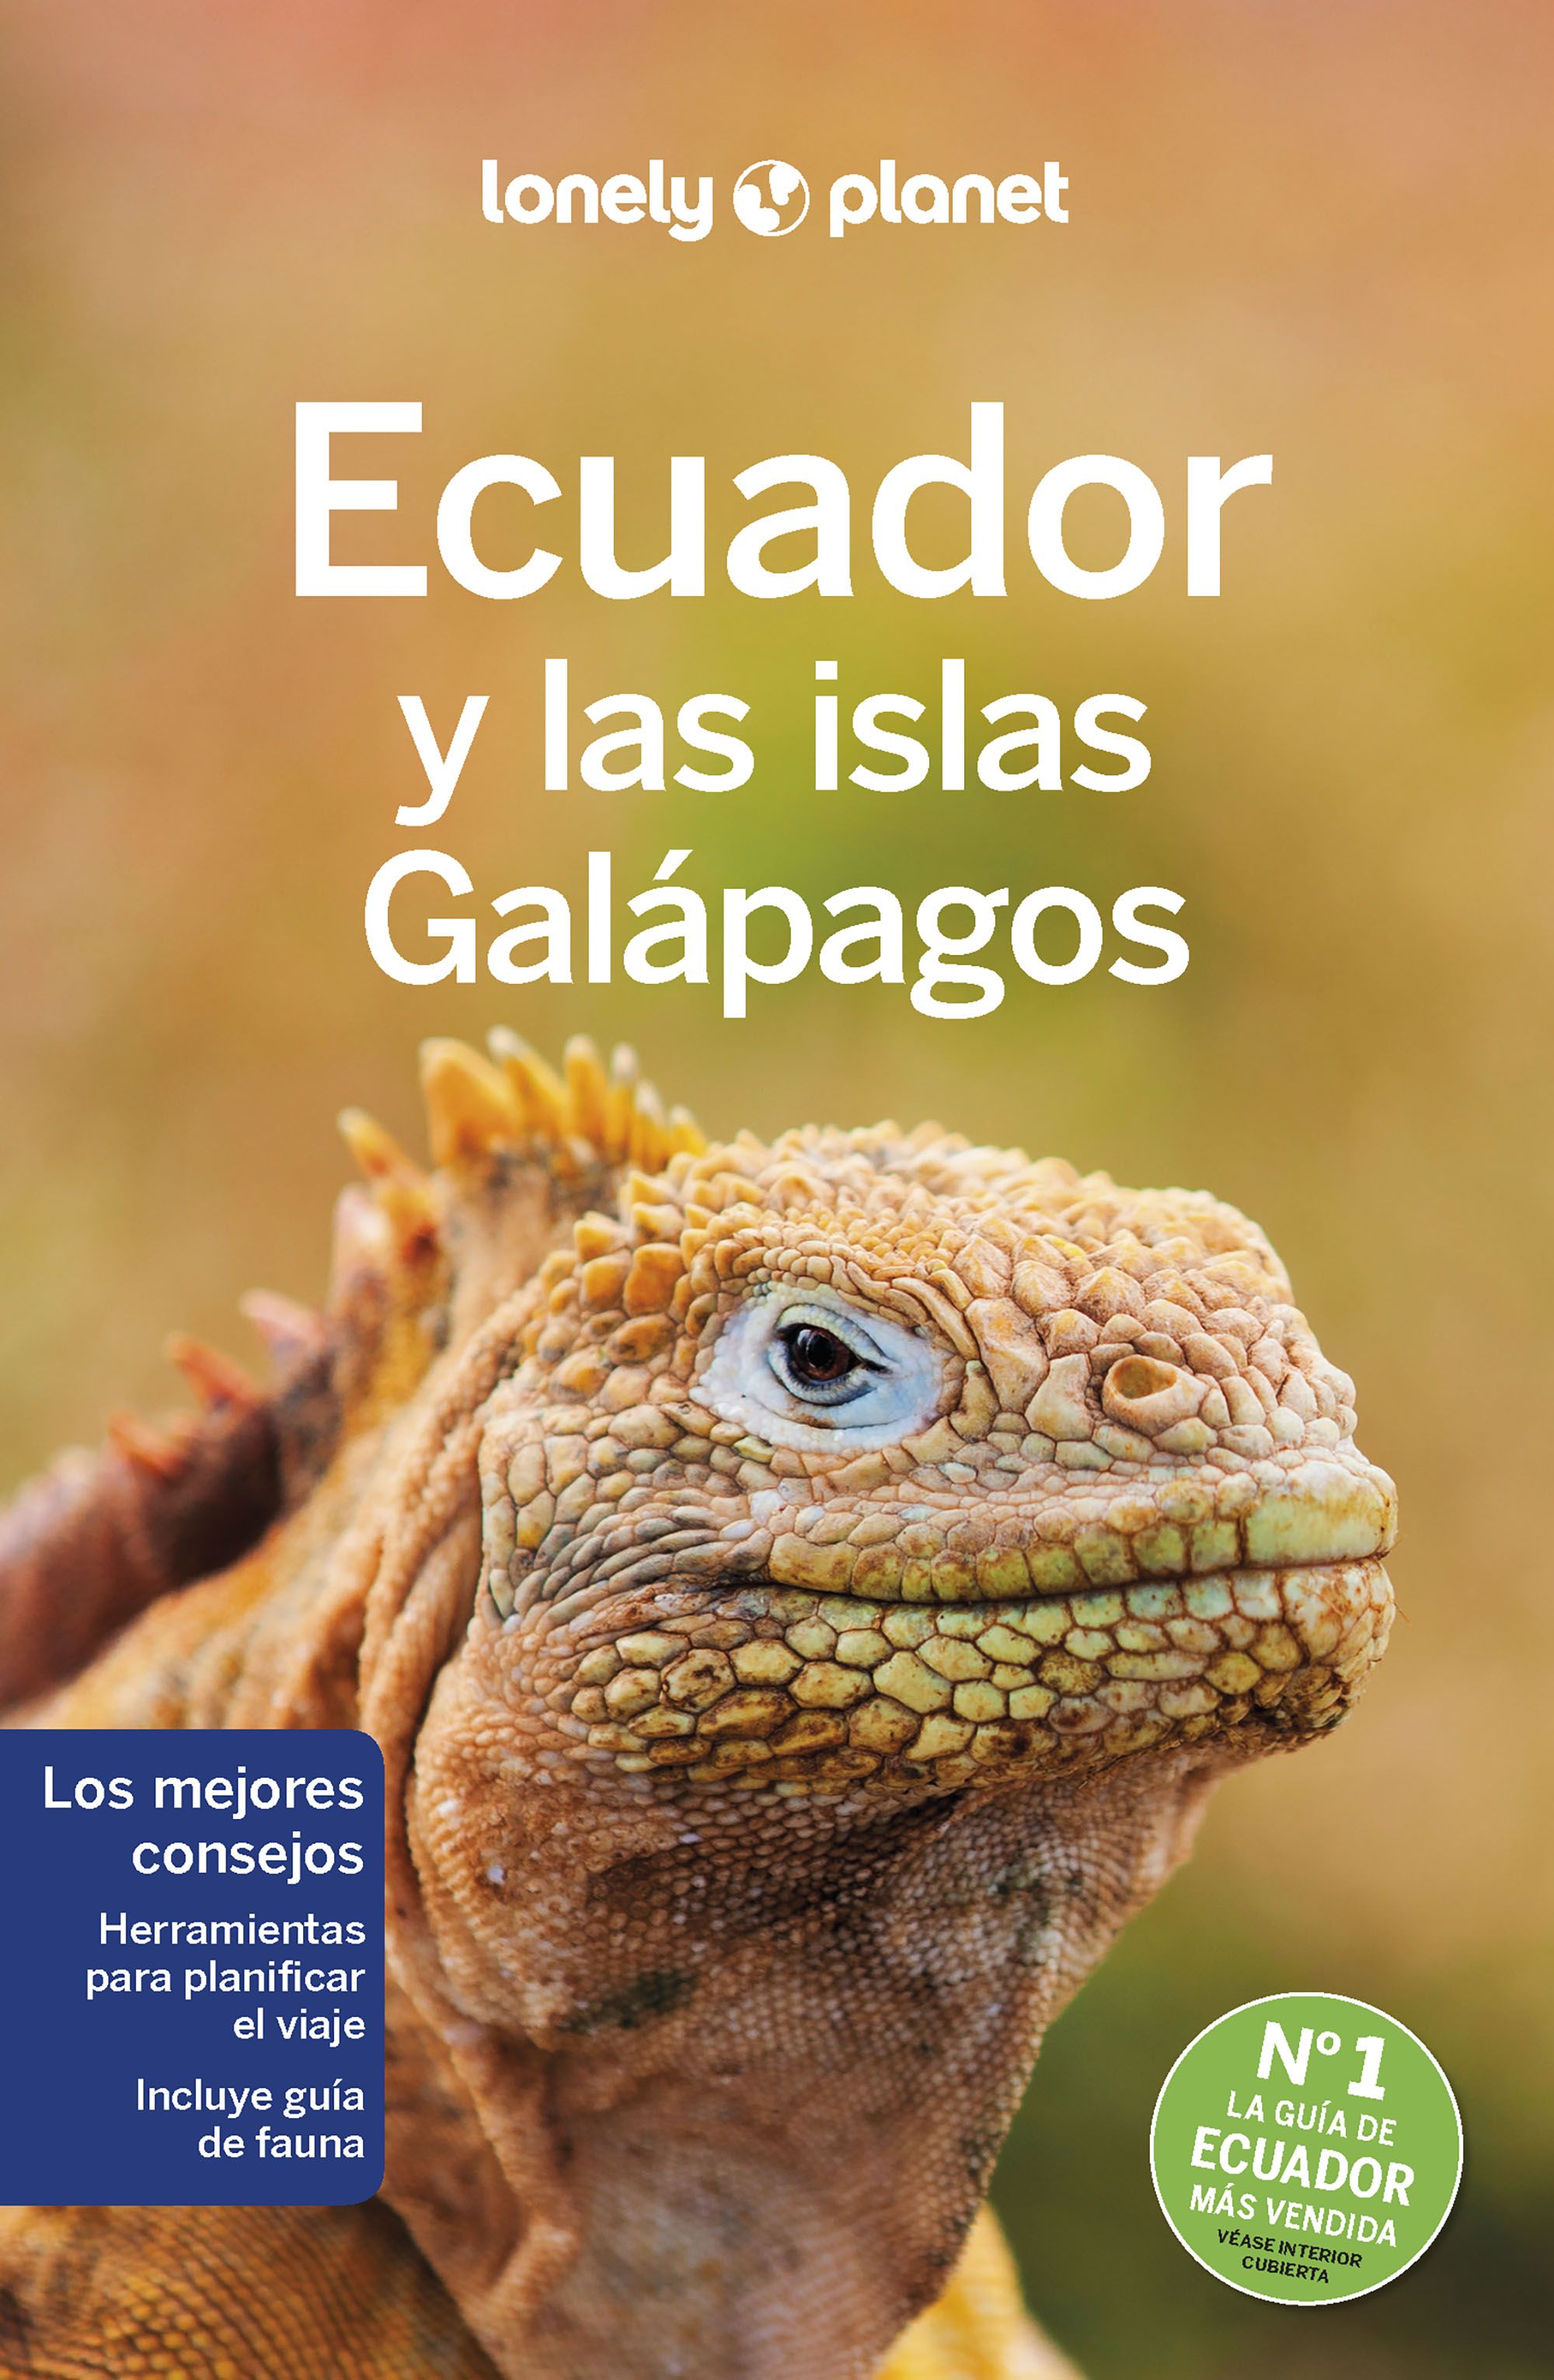 Guía Ecuador y las islas Galápagos 8